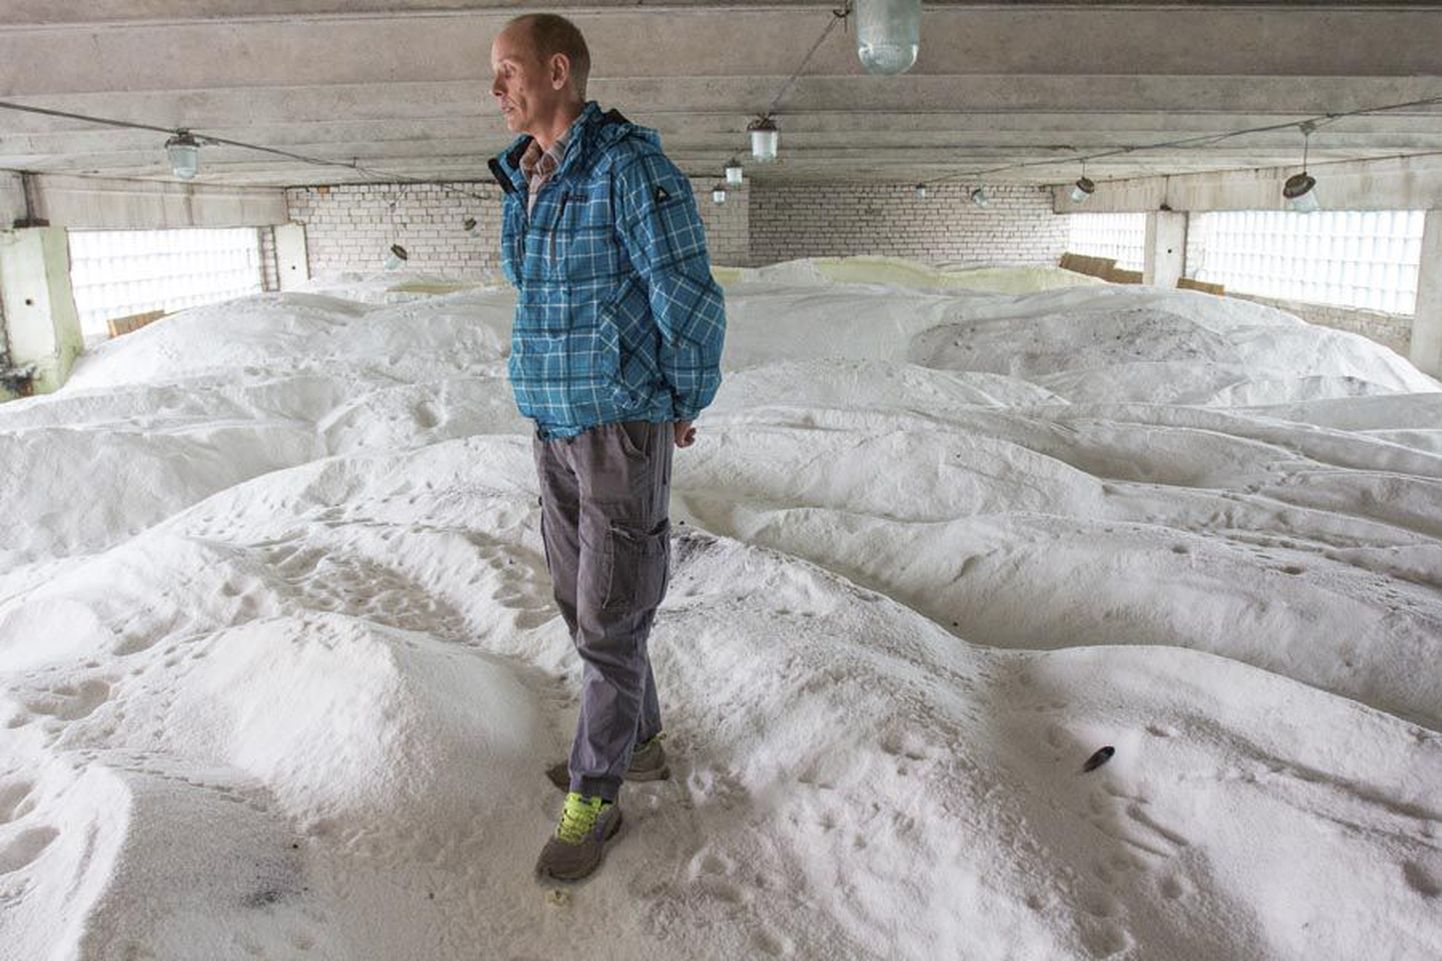 Eesti Keskkonnateenuste lääne regiooni tänavahooldusmeister Janno Laht seisab Saksamaalt toodud soolal, mis ootab puistamist Viljandi tänavatele.